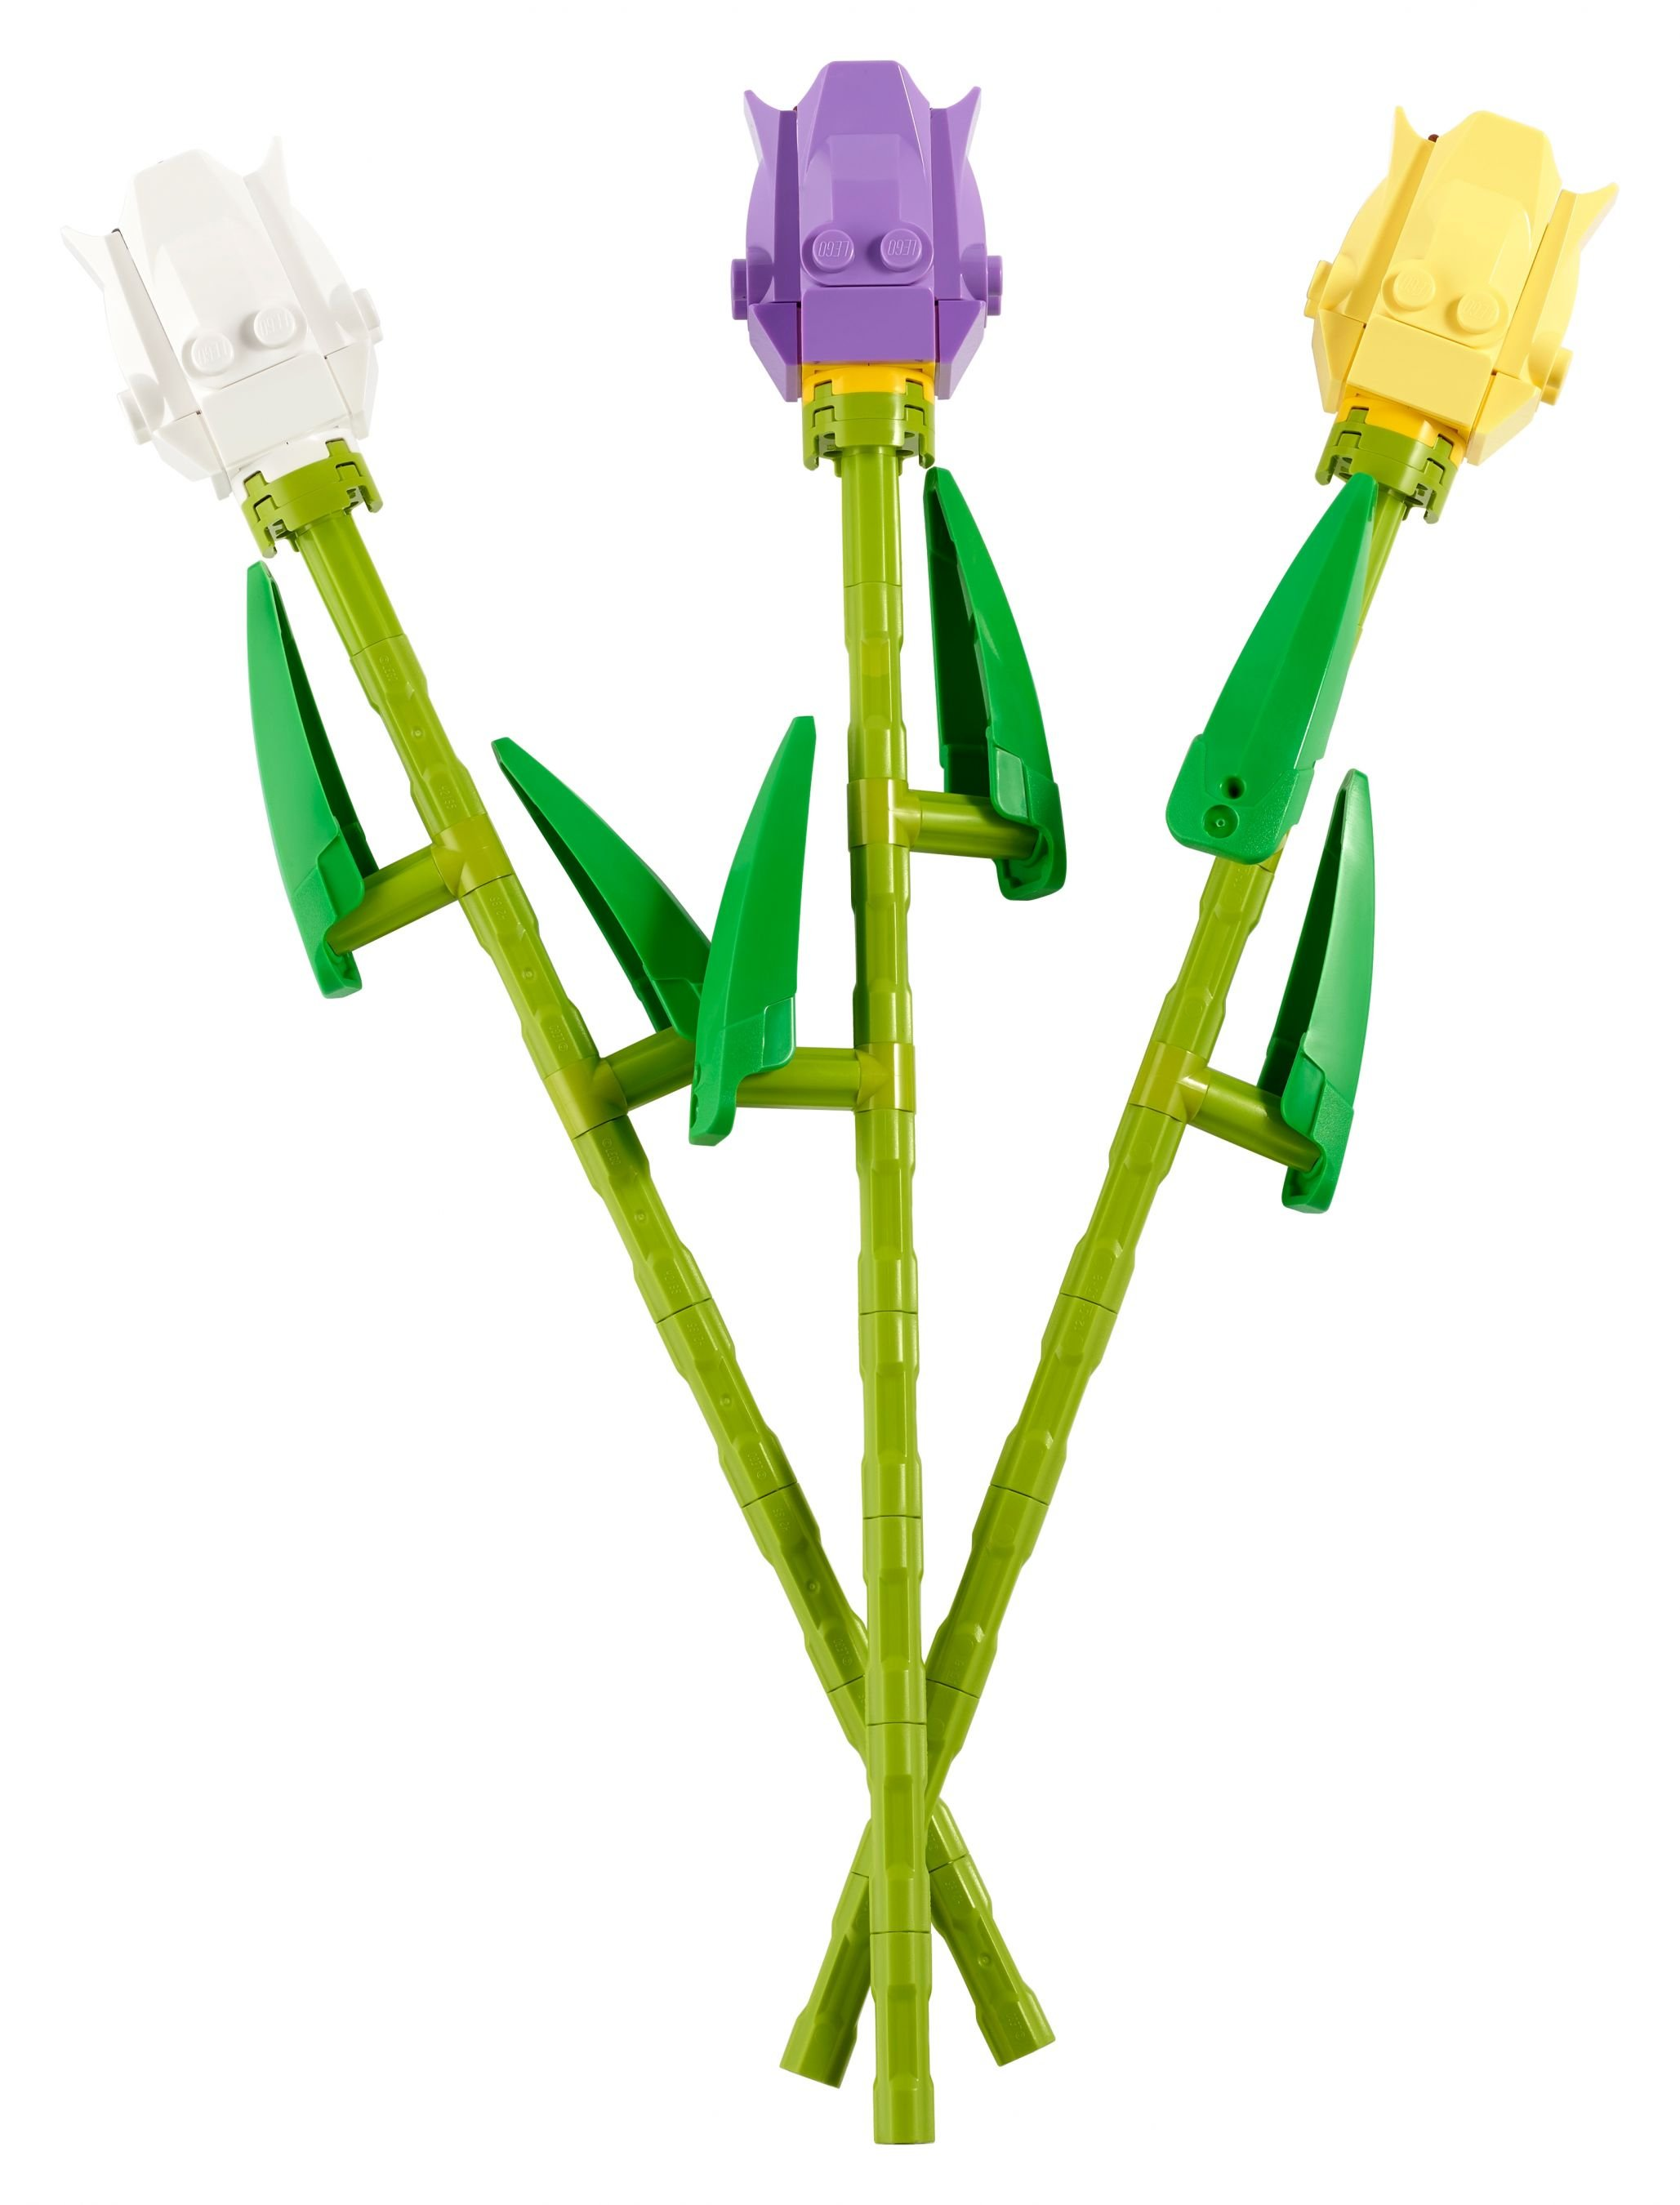 Creator Bausatz 40461 LEGO Tulpen